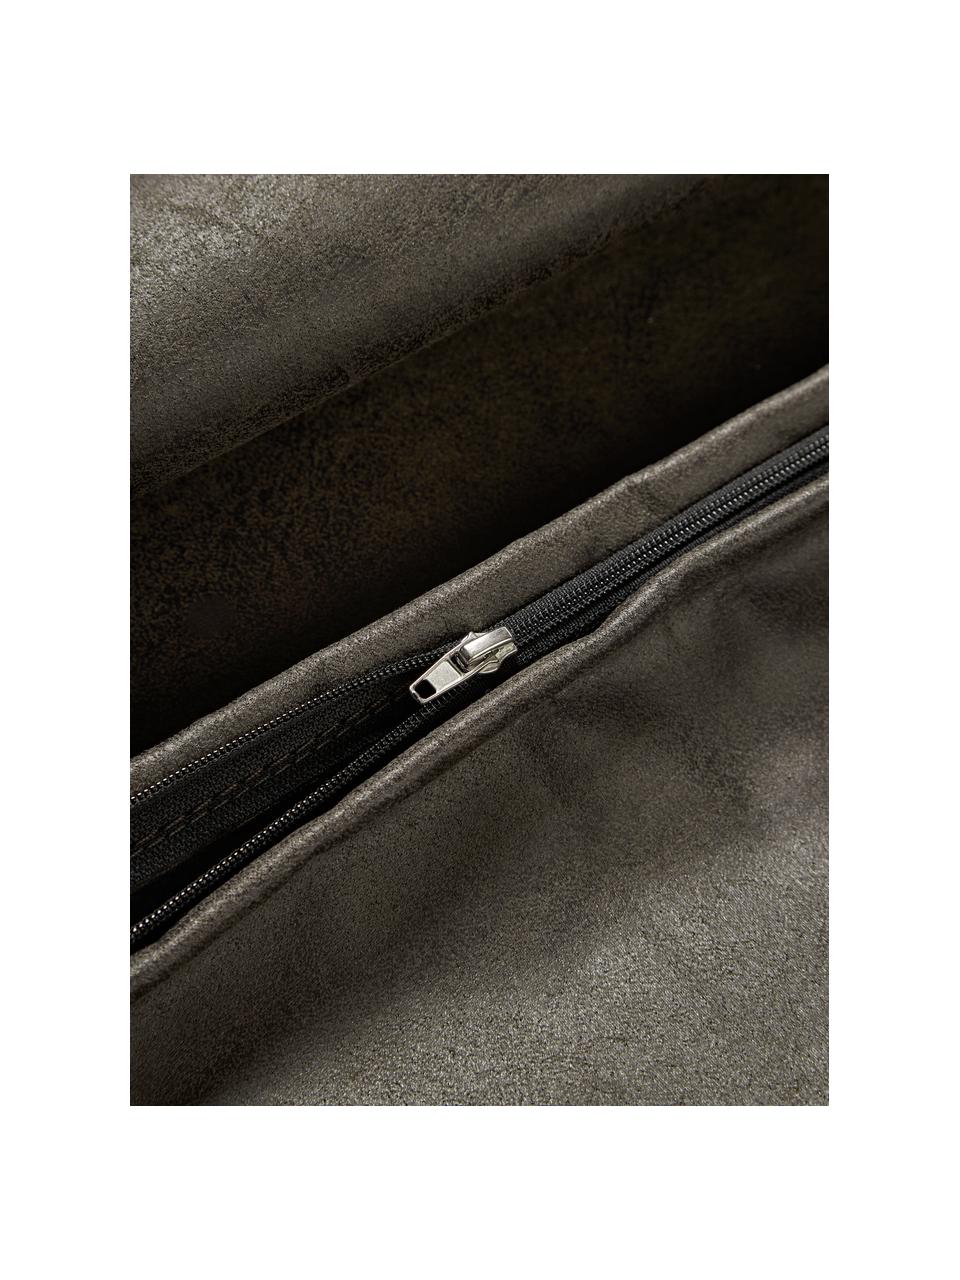 Cojín de cuero reciclado sofá Lennon, Funda: 70% cuero, 30% poliéster, Cuero gris pardo, An 50 x L 80 cm